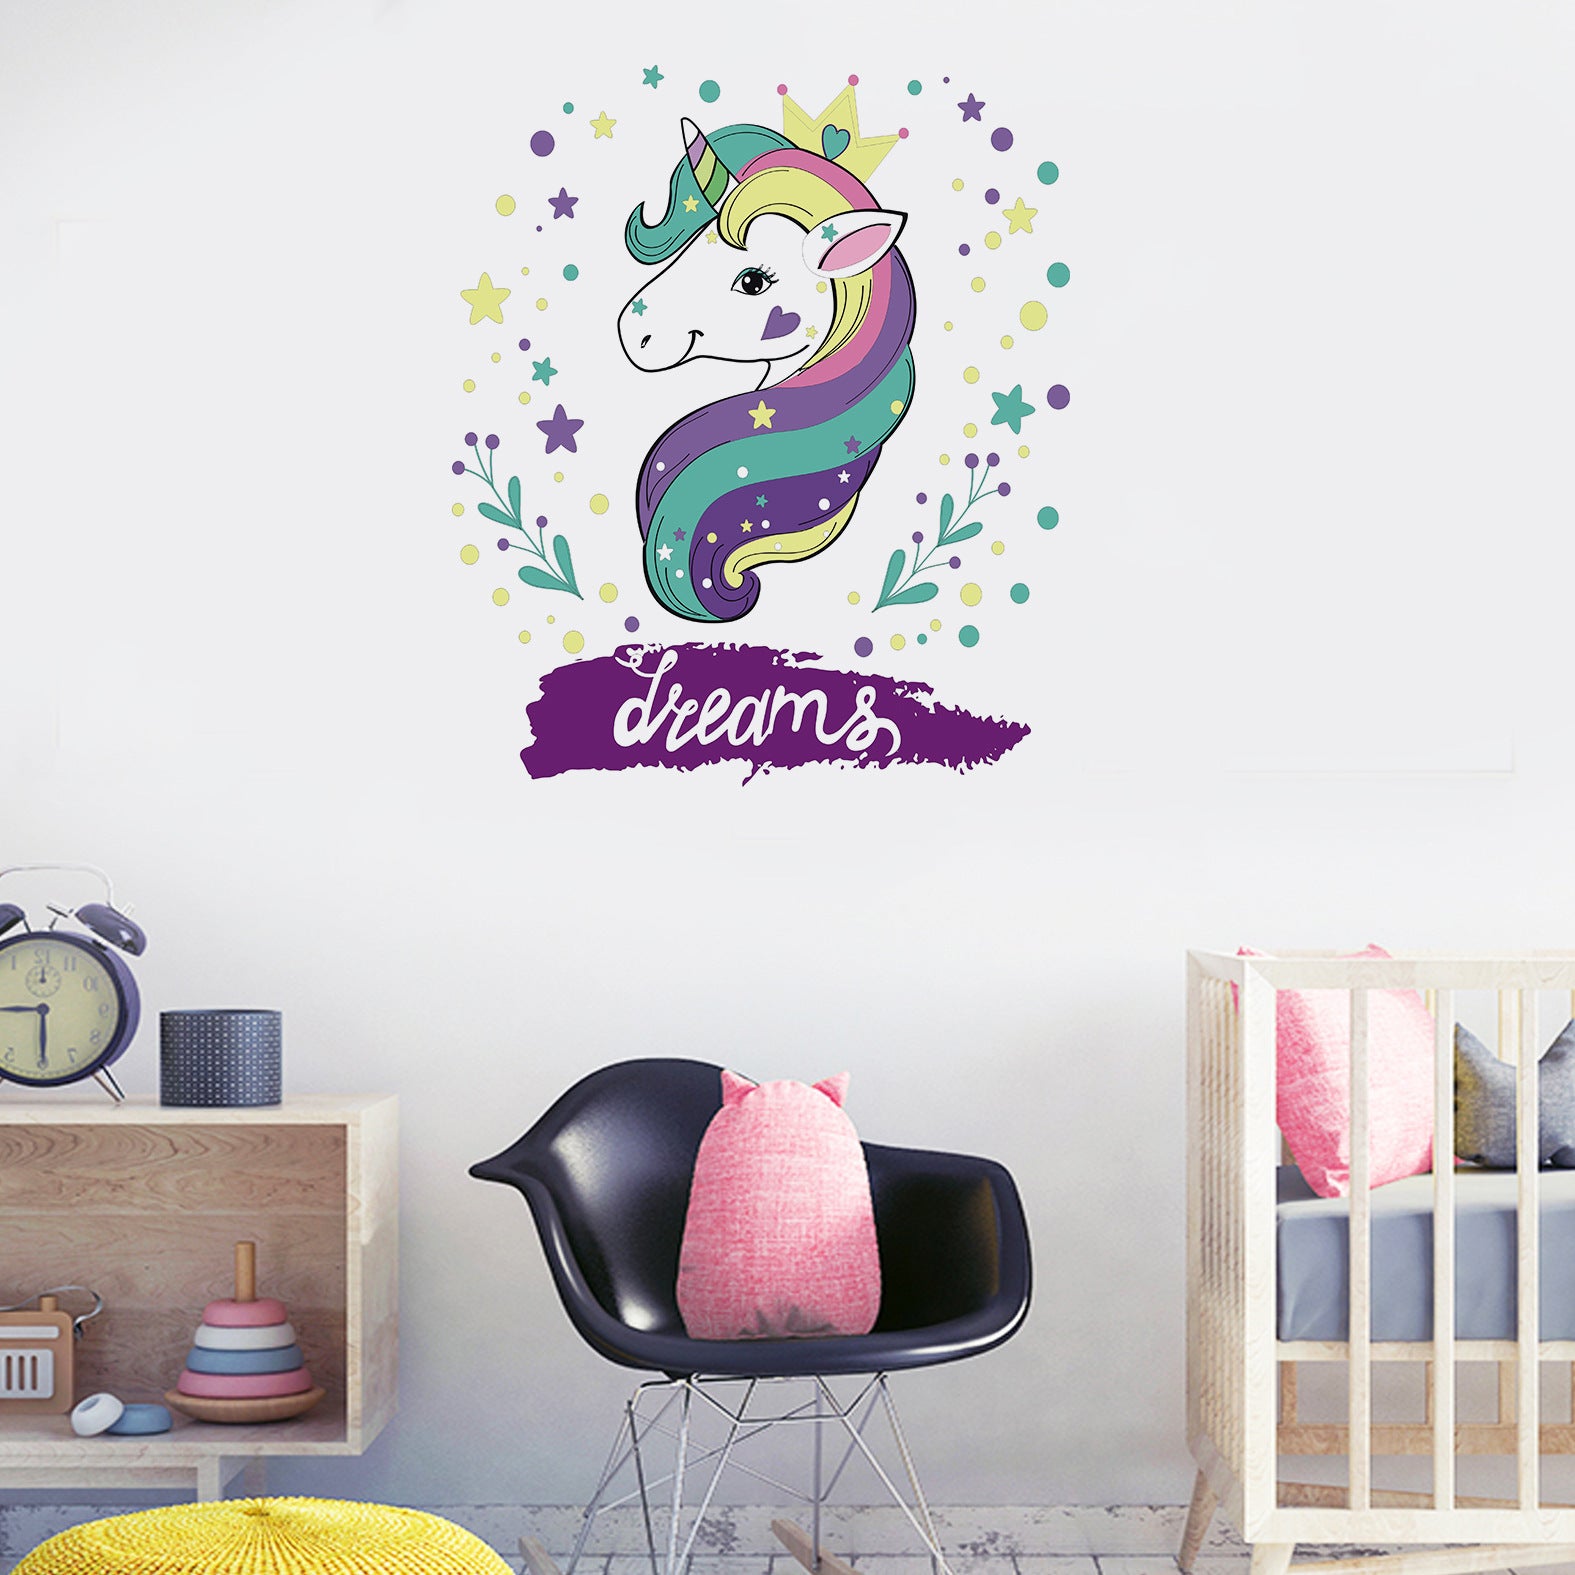 Decoratiune interioara pentru dormitor sau sufragerie, sticker de perete cu unicorn animat